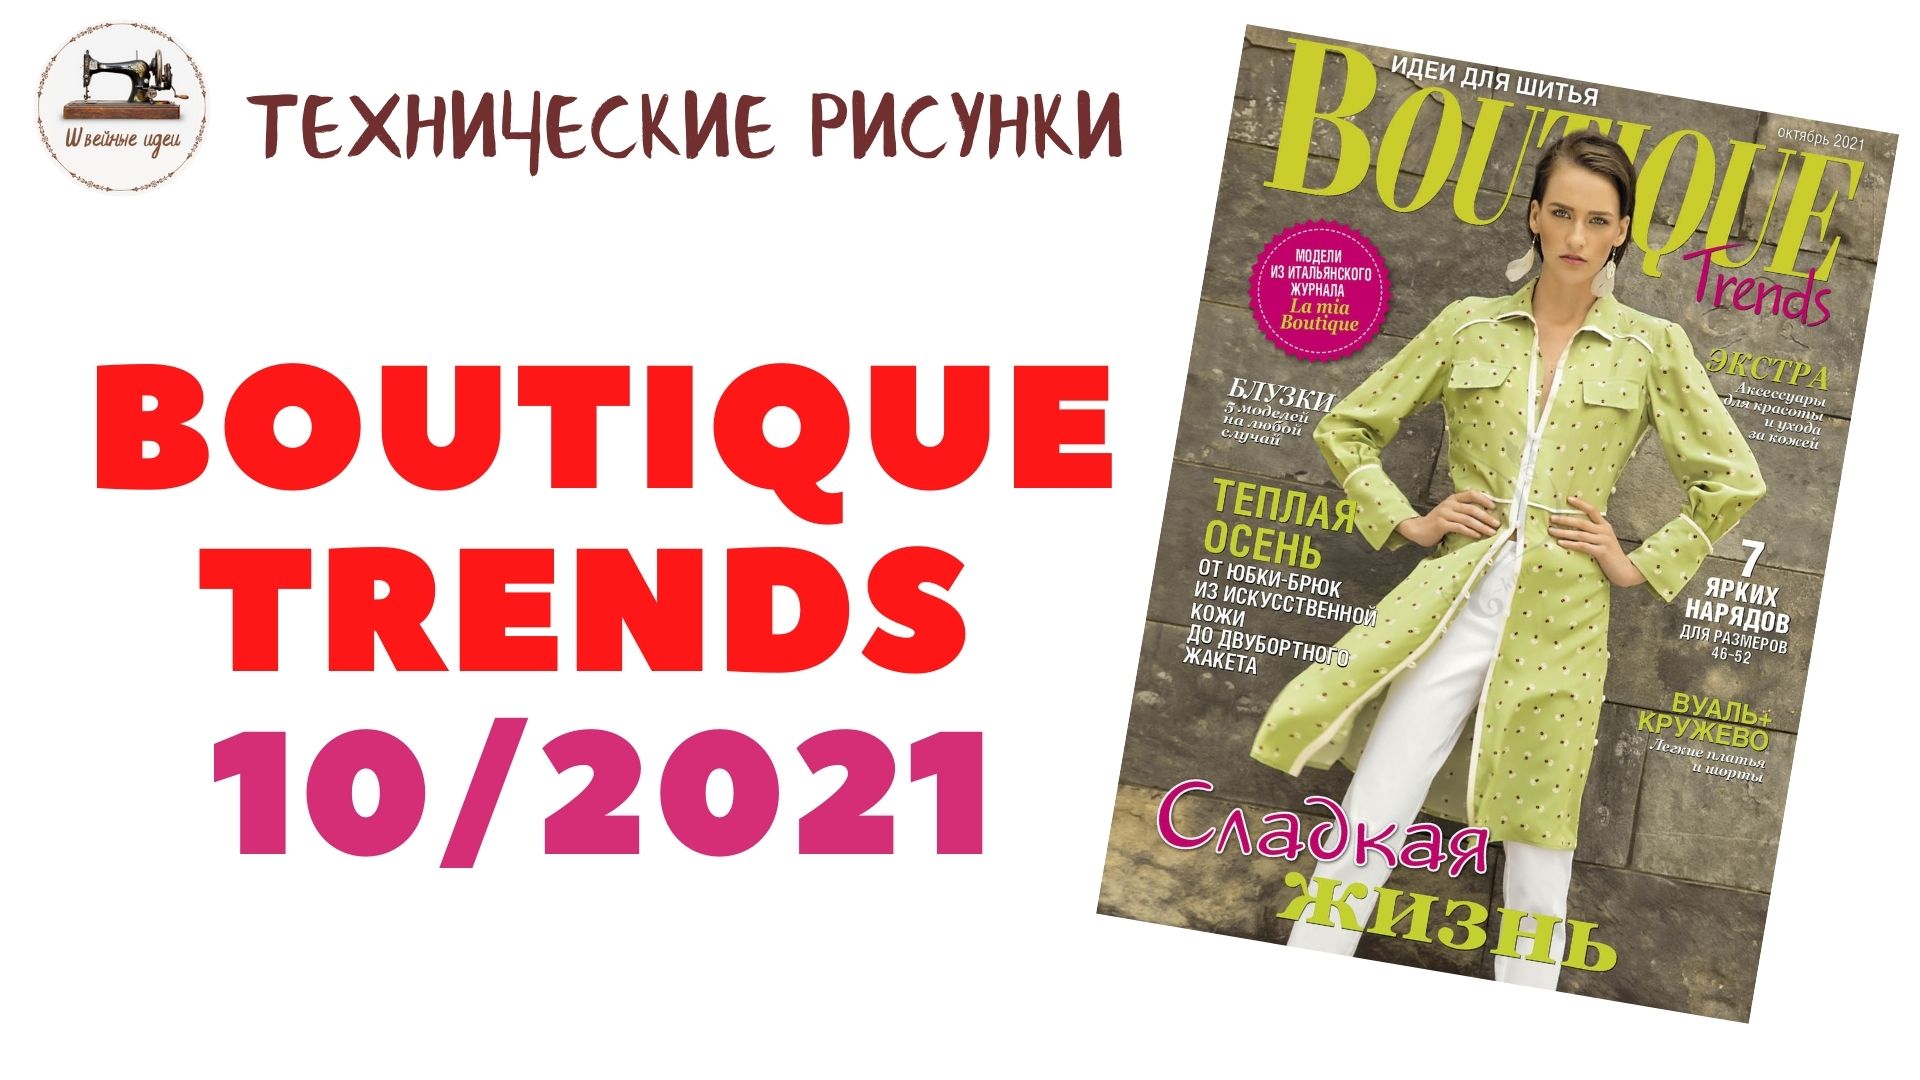 Boutique Trends 10/ 2021/ Октябрь 2021/ Итальянская мода. Технические рисунки крупно